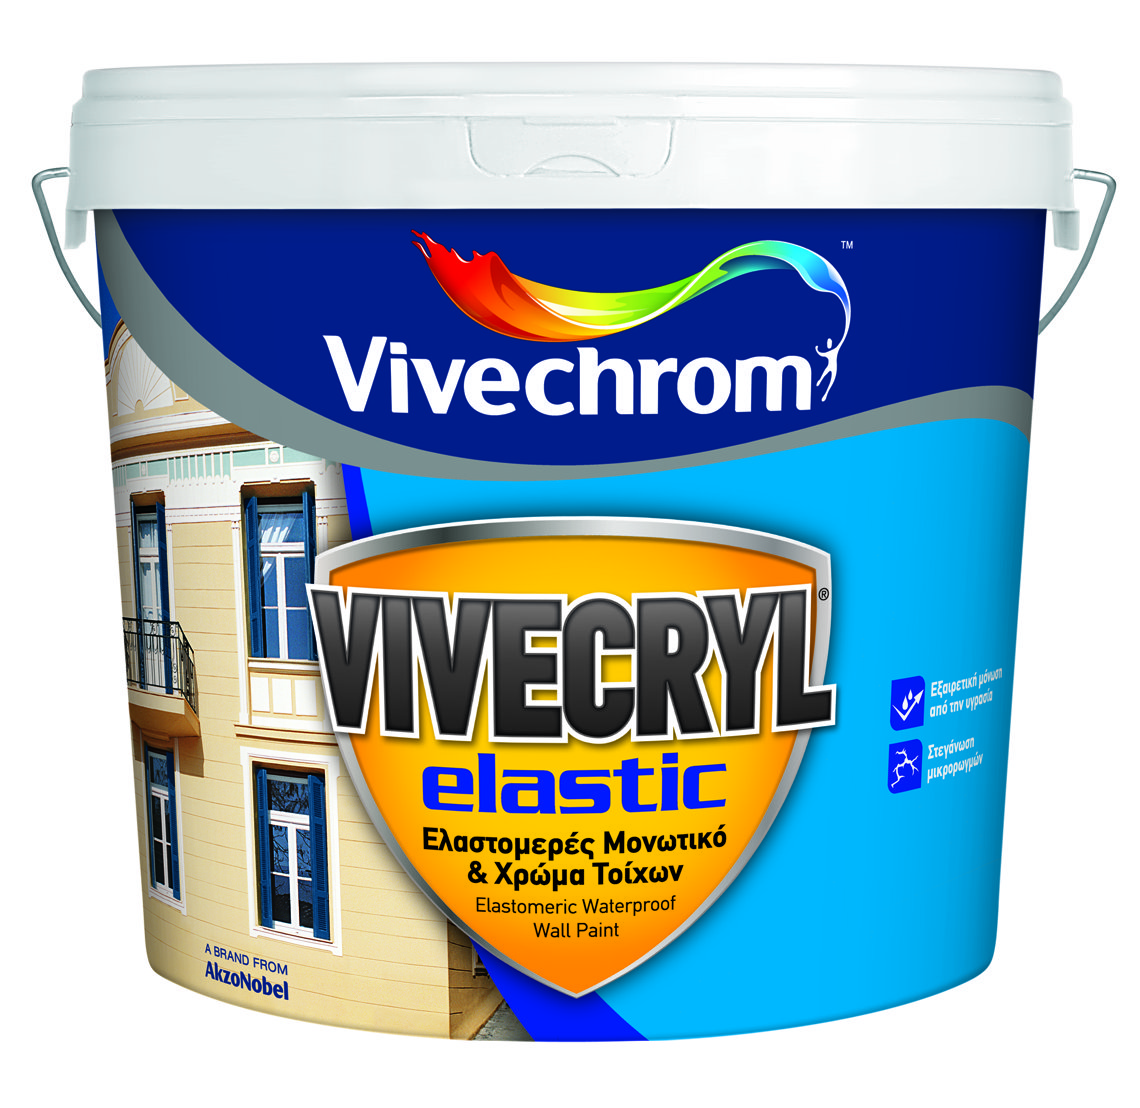 Vivechrom Vivecryl Elastic Matt Finish White 10L